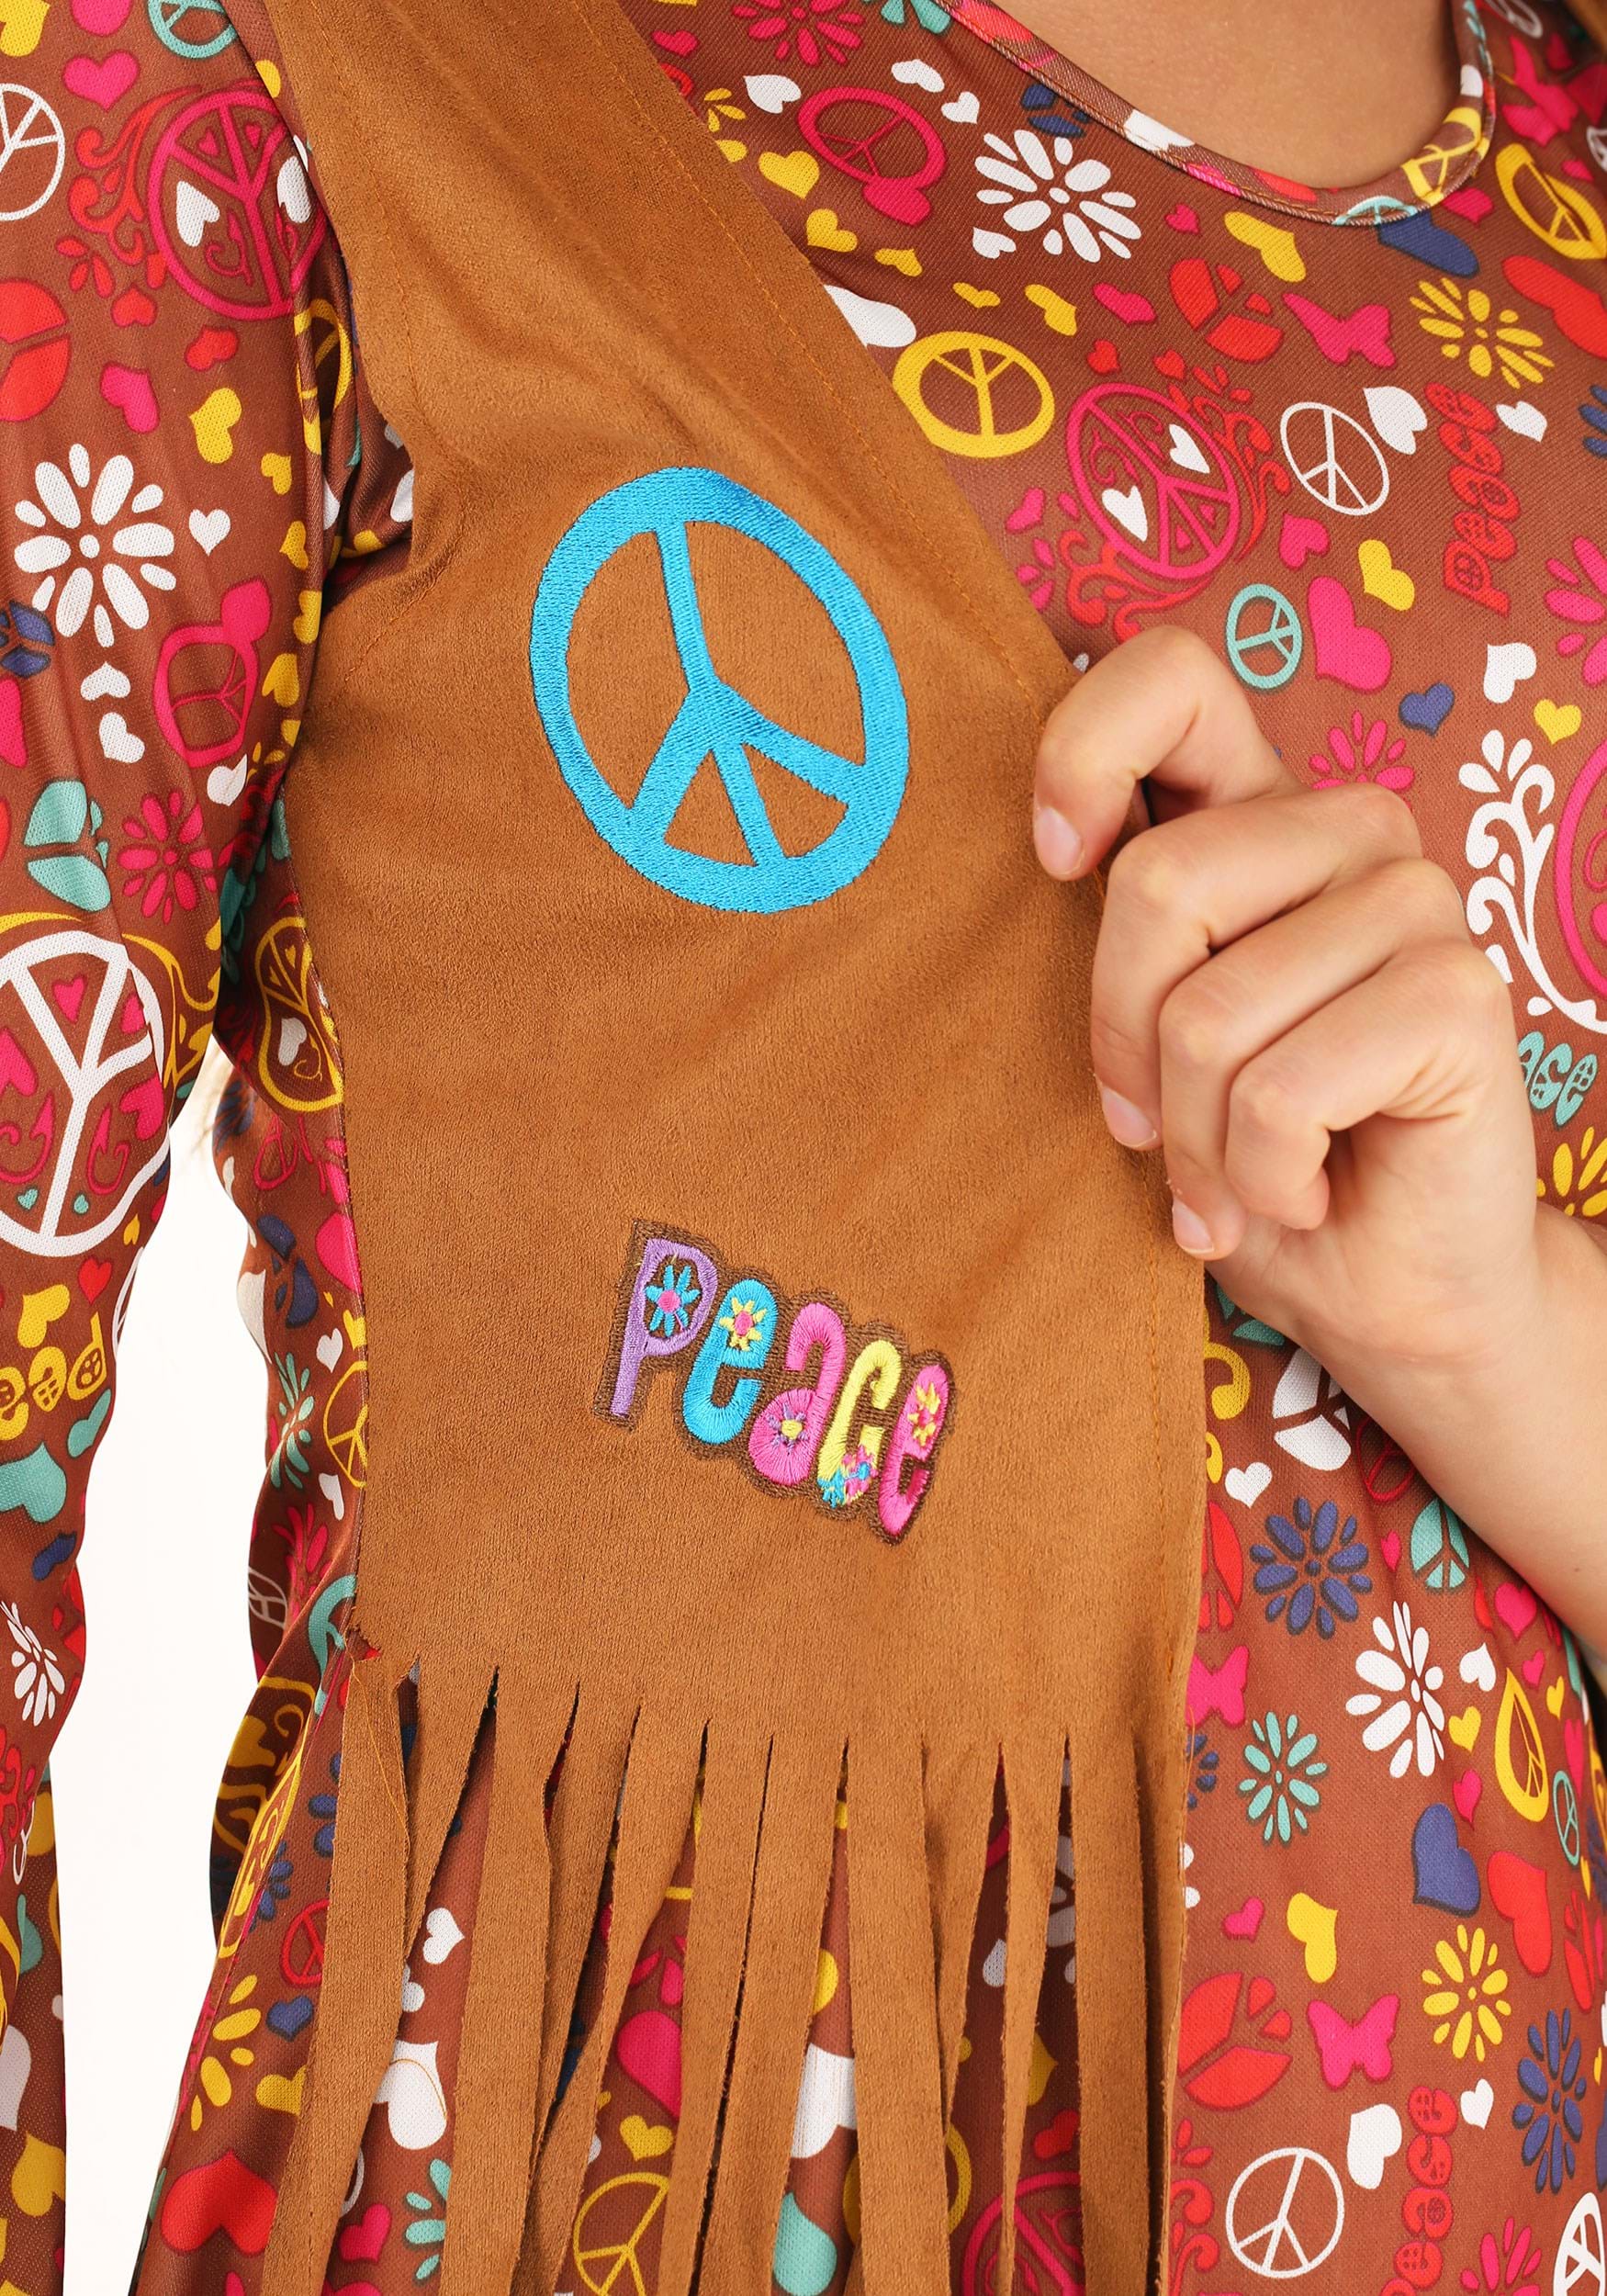 Peace & Love Hippie Fancy Dress Costume For Women